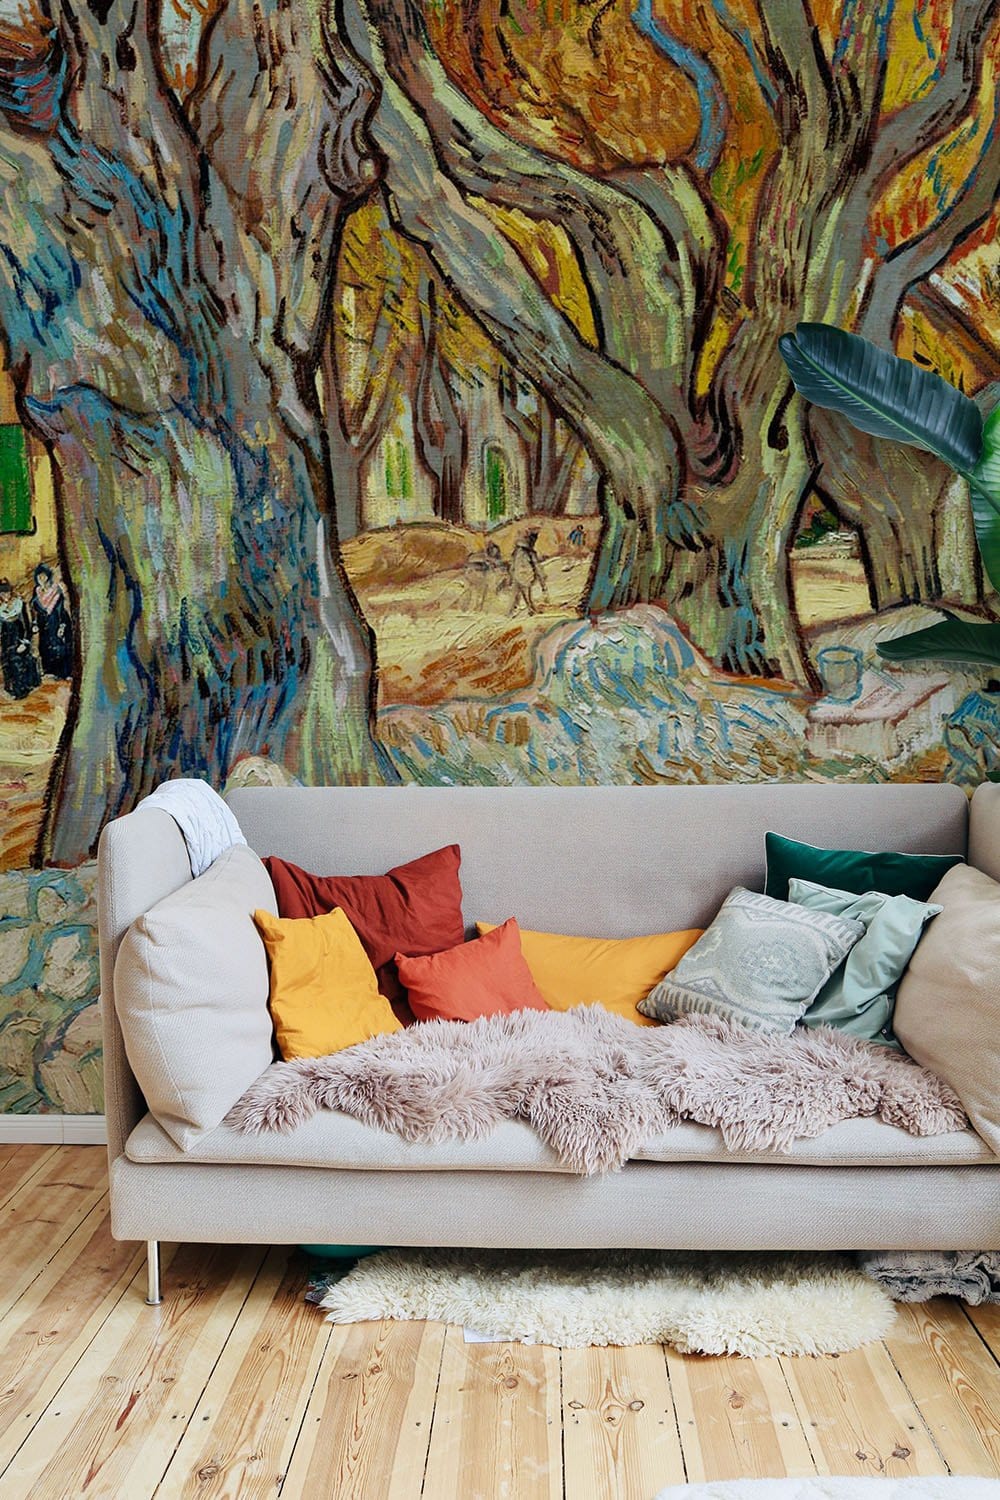 Vintage Artistic Landscape Bedroom Mural Wallpaper